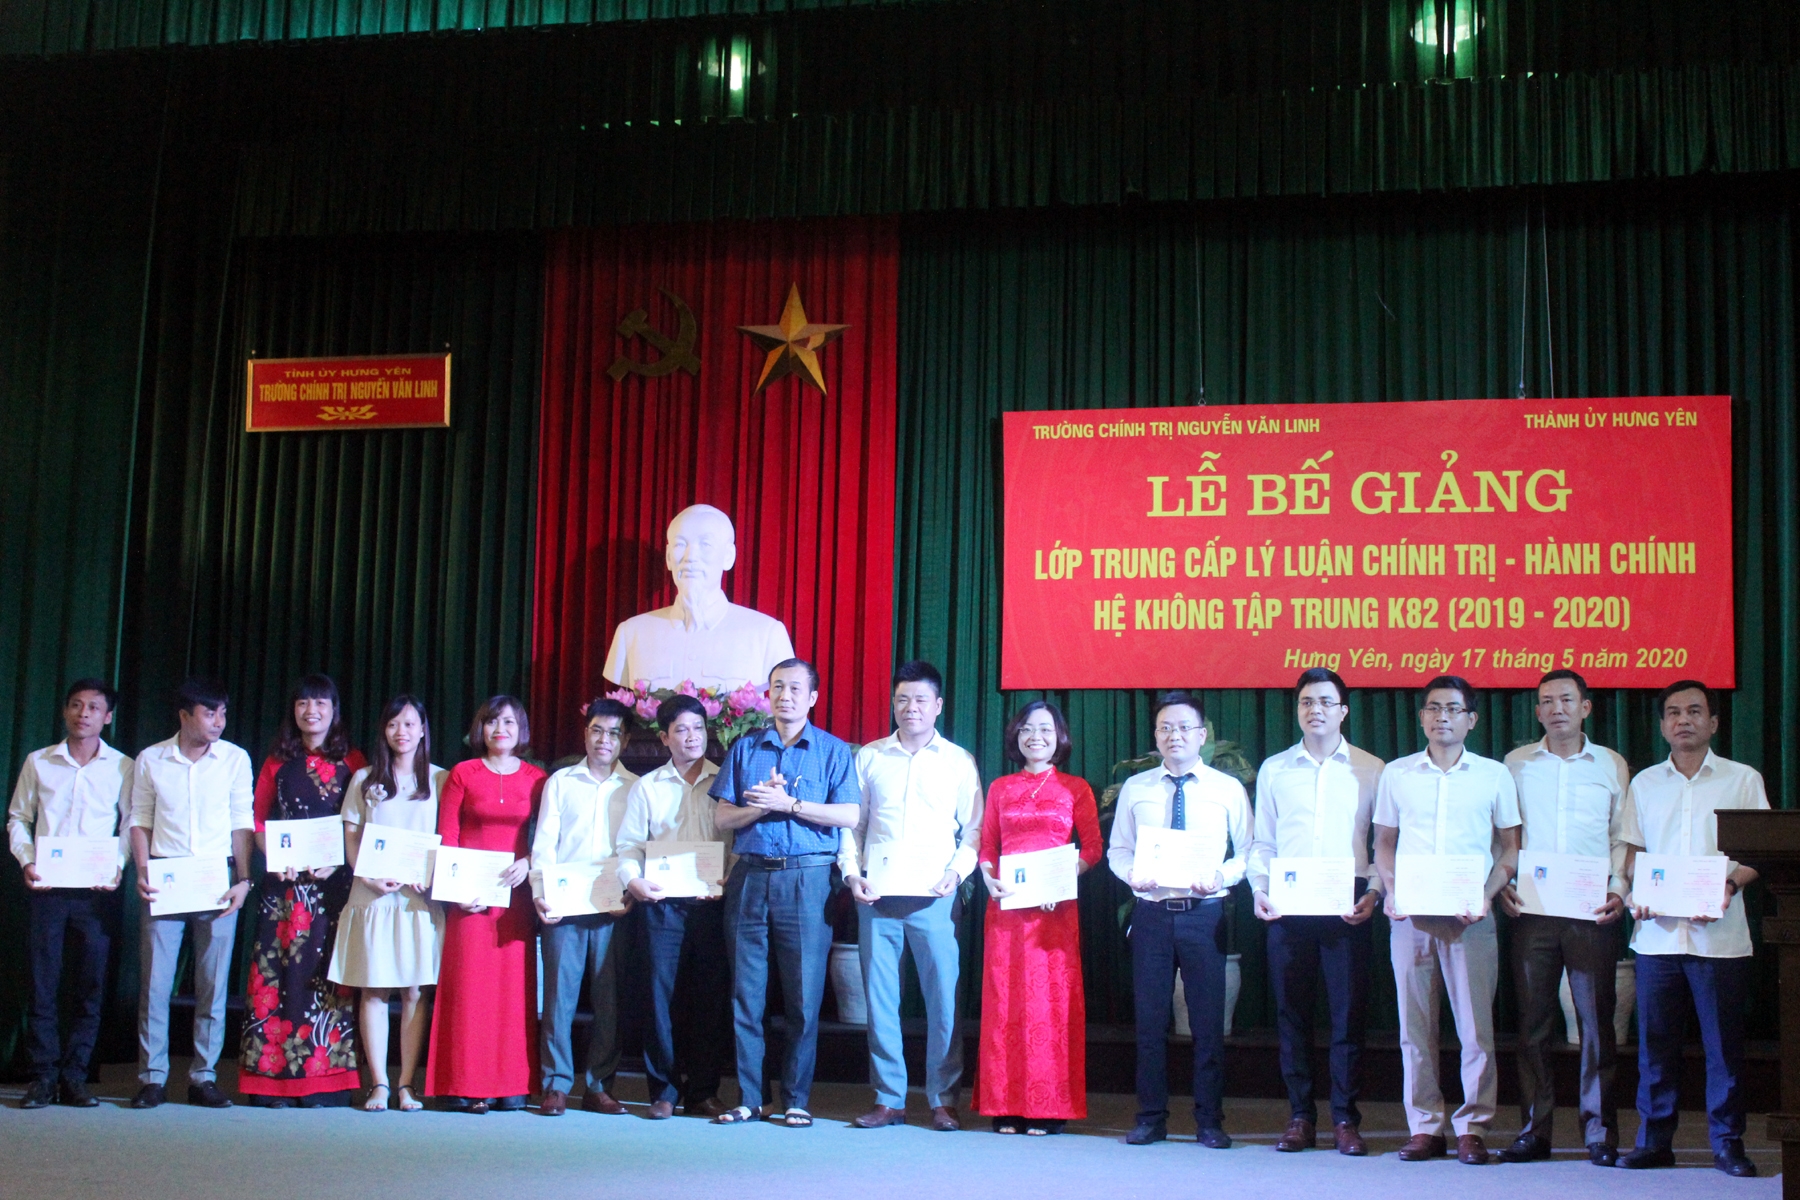 Một số kinh nghiệm giúp nâng cao chất lượng hướng dẫn học viên các lớp trung cấp LLCT - HC đi nghiên cứu thực tế tại trường Chính trị Nguyễn Văn Linh hiện  nay